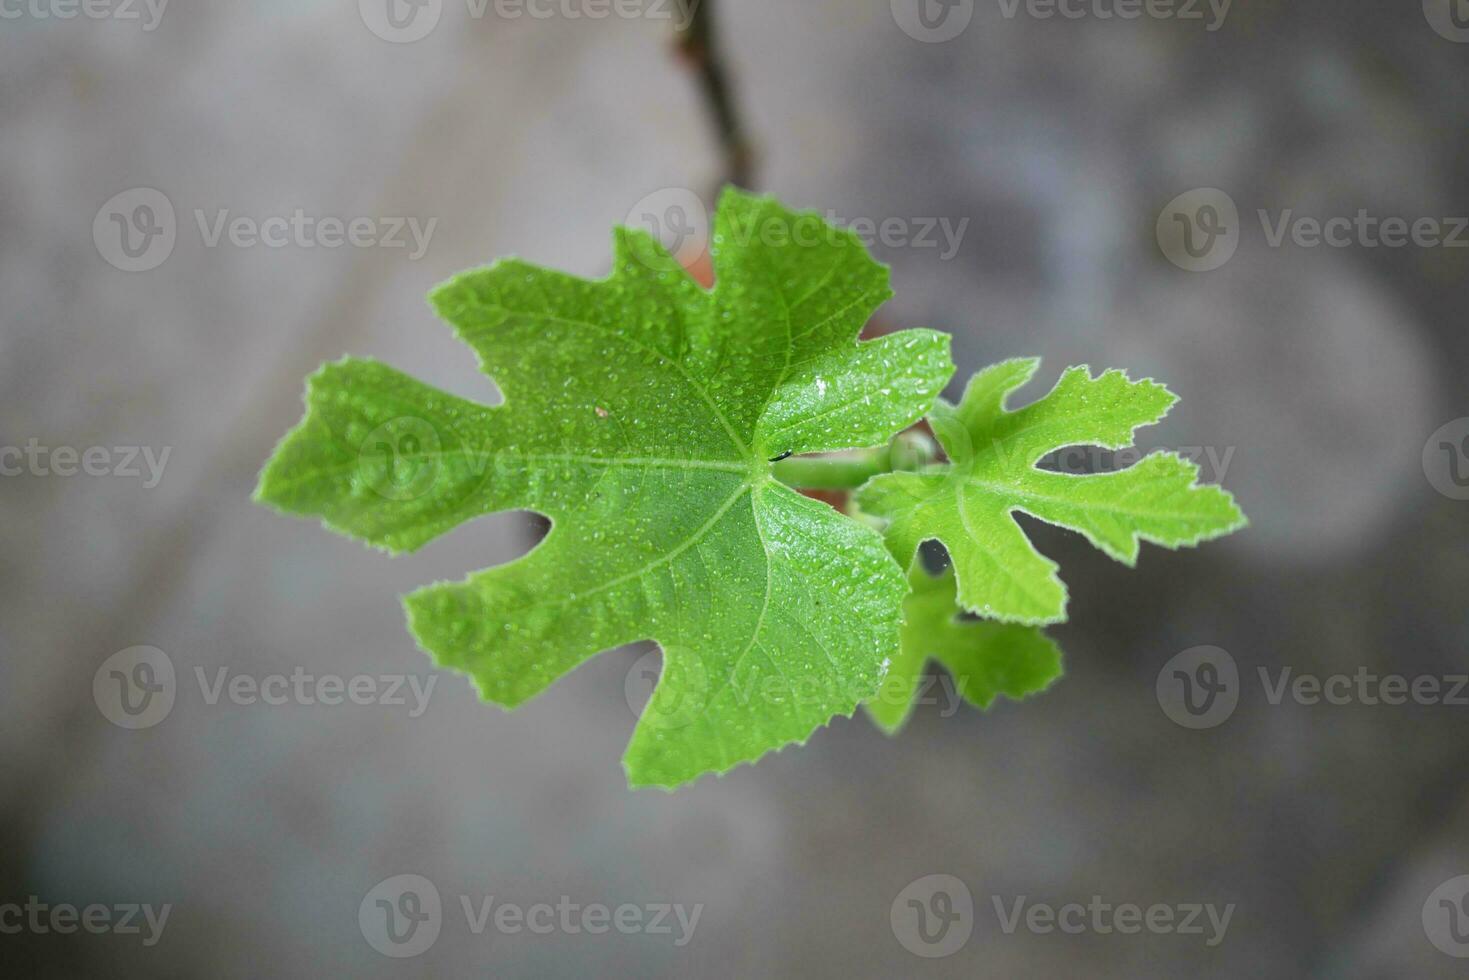 makro närbild ung färsk fikon löv medan den har varit besprutning med gödselmedel lösning , de gödsling procedur av de fikon träd i en pott. selektiv fokus. foto